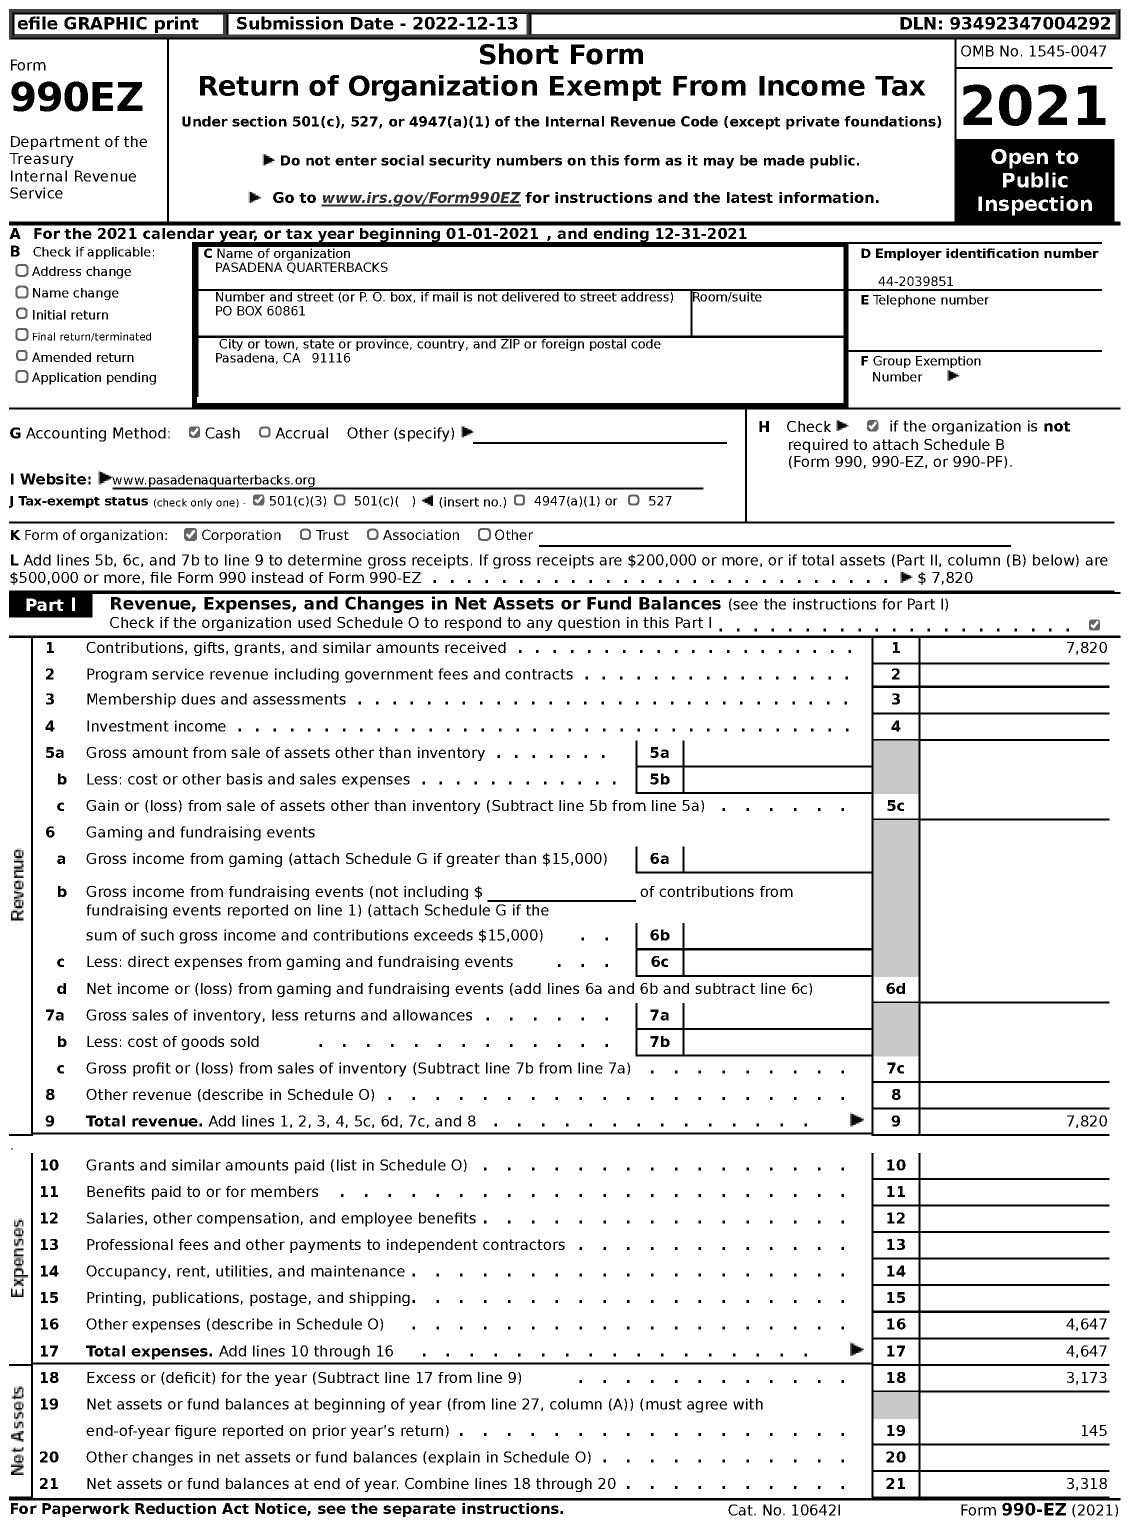 Image of first page of 2021 Form 990EZ for Pasadena Quarterbacks